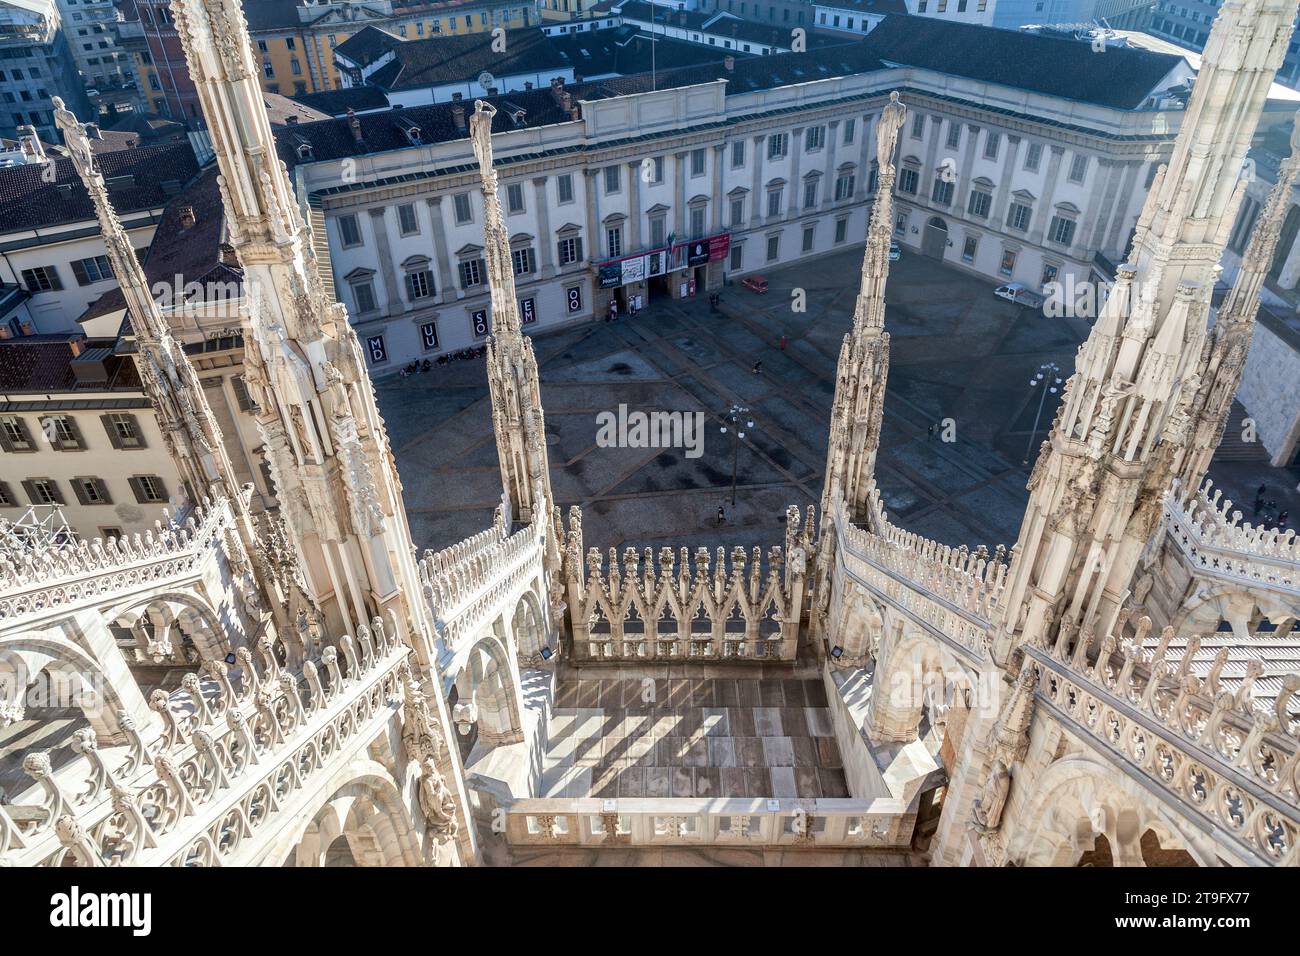 Parte dell'elaborato esterno della Cattedrale di Milano o del Duomo di Milano, un'incredibile chiesa gotica nel centro storico di Milano, Italia Foto Stock